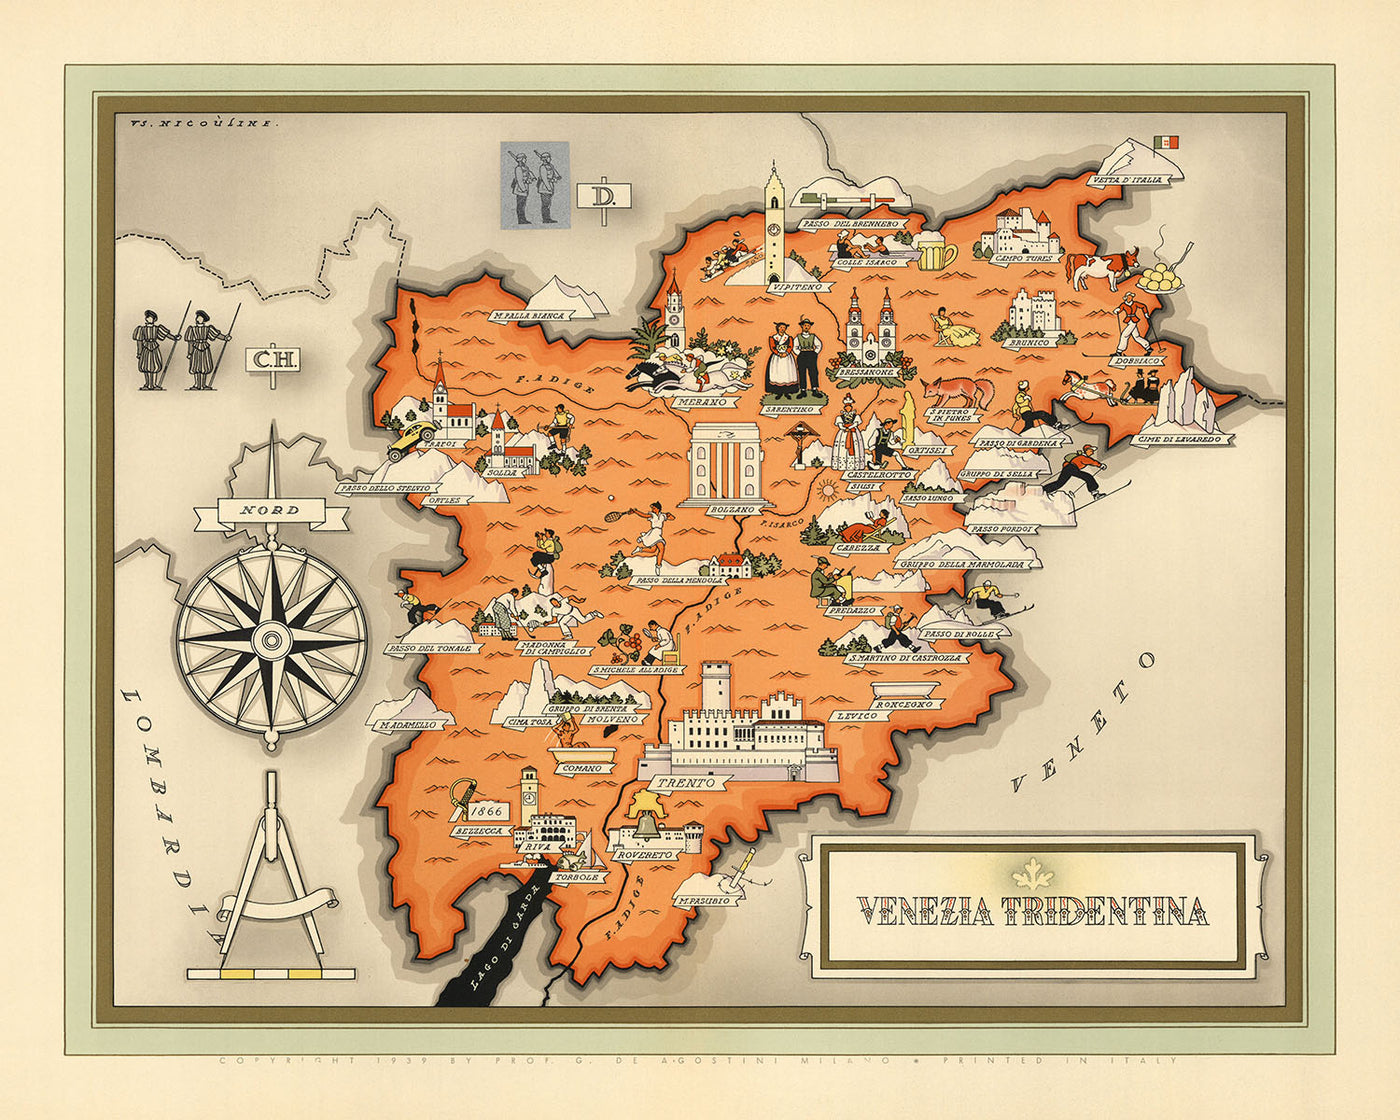 Alte Bildkarte von Trentino-Südtirol von De Agostini, 1938: Trient, Bozen, Brixen, Meran, Rovereto